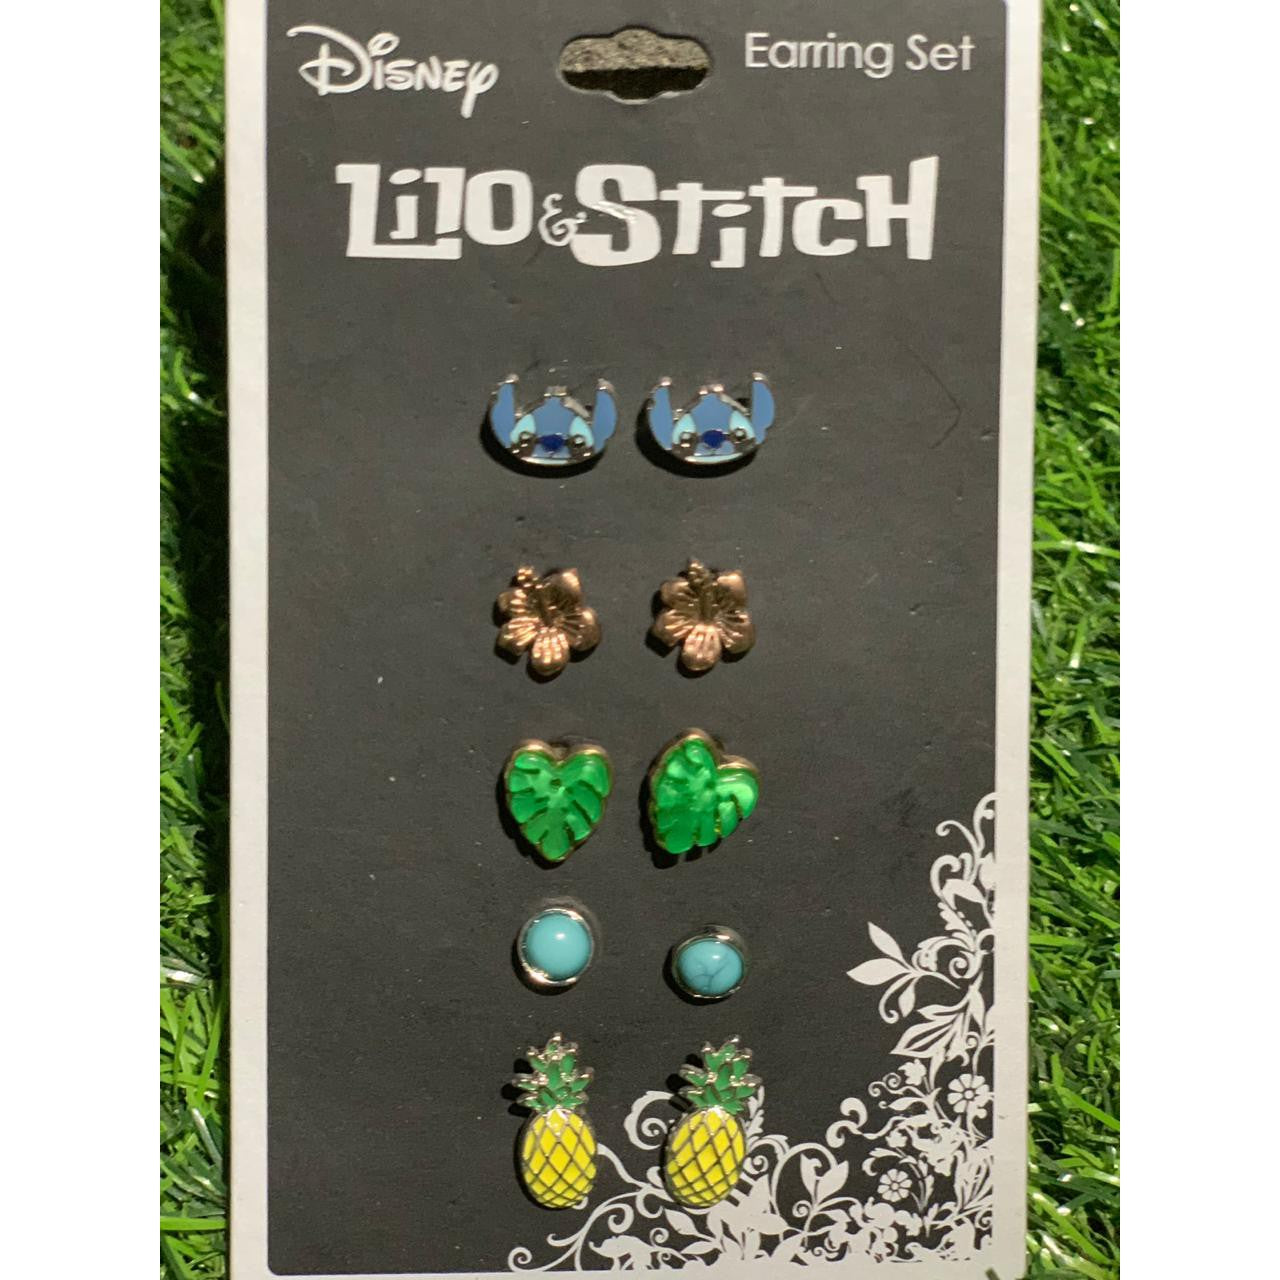 Bisutería de Disney Lilo & Stitch (Aretes) - The Gift Shop Costa Rica